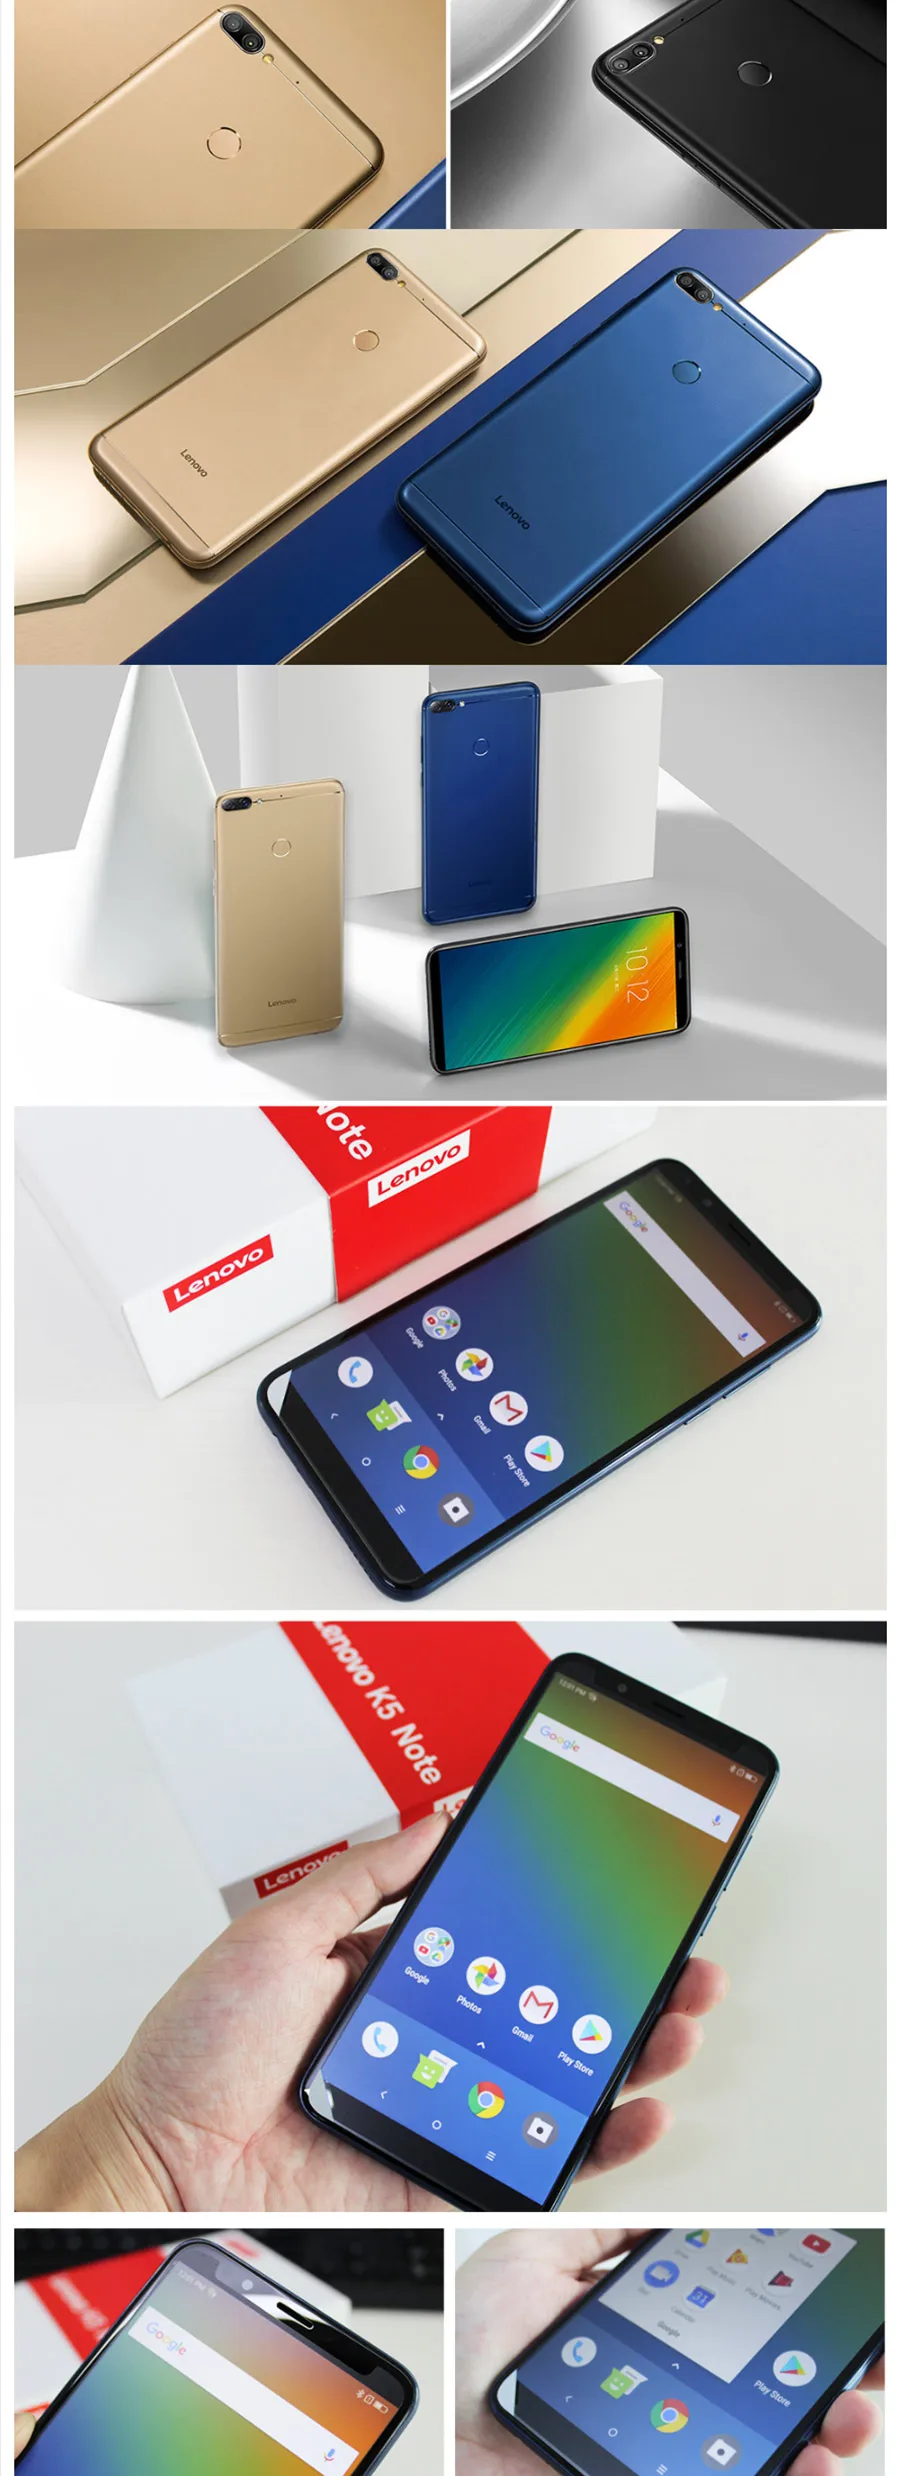 联想k9 Note L Android 8 1 6 0 18 9 智能手机1440 7 4 Gb 64 Gb Octa Core Dual 相机fdd Lte 手机 Buy 返回分类lenovo K9 配件product On Alibaba Com